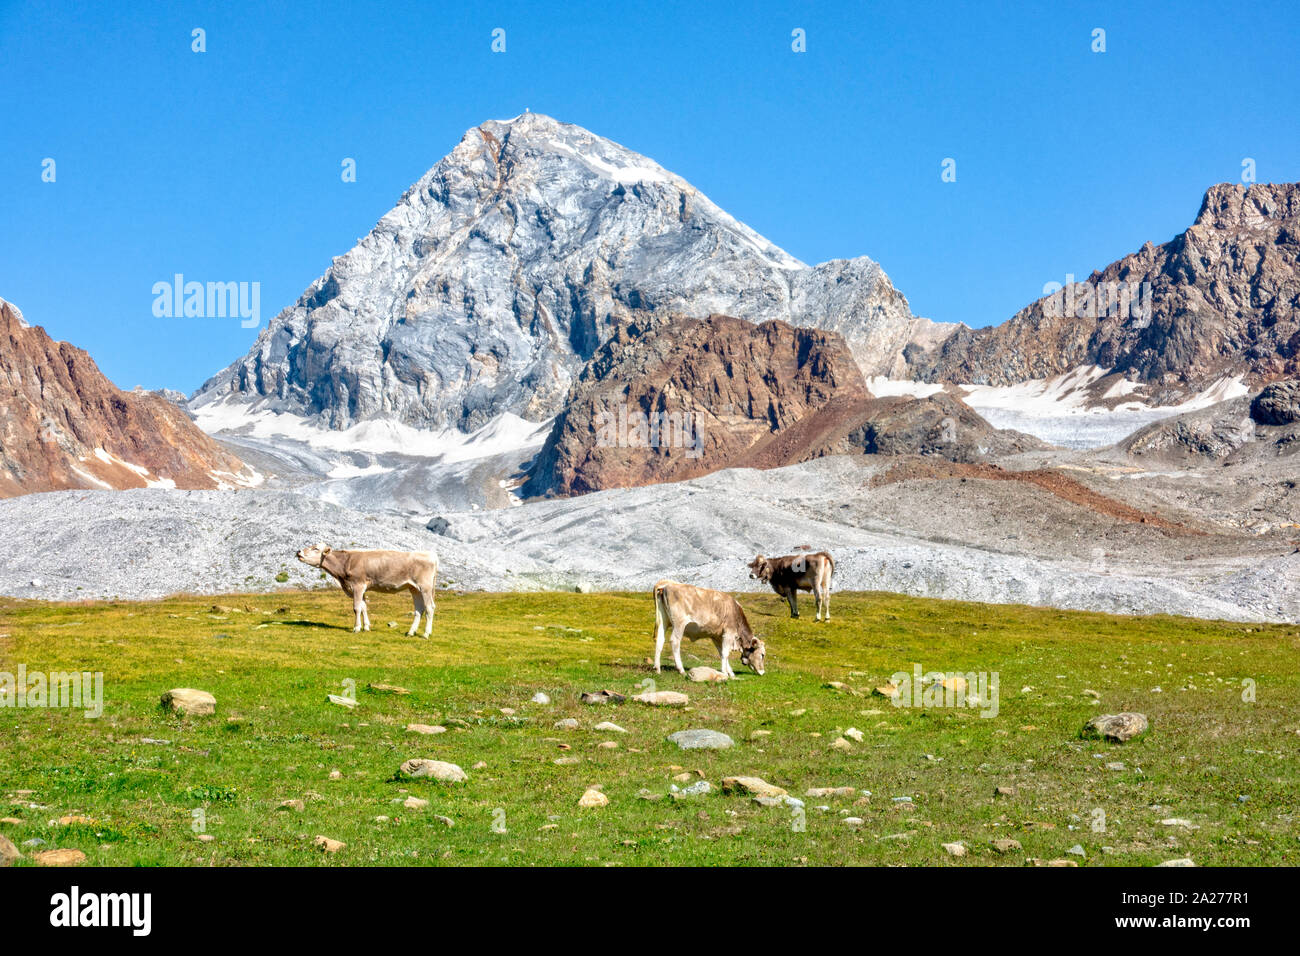 Ortler célèbre montagne avec une roche appelée Koenigsspitze au Tyrol du Sud, Italie. Vaches qui paissent dans l'avant-plan. Banque D'Images